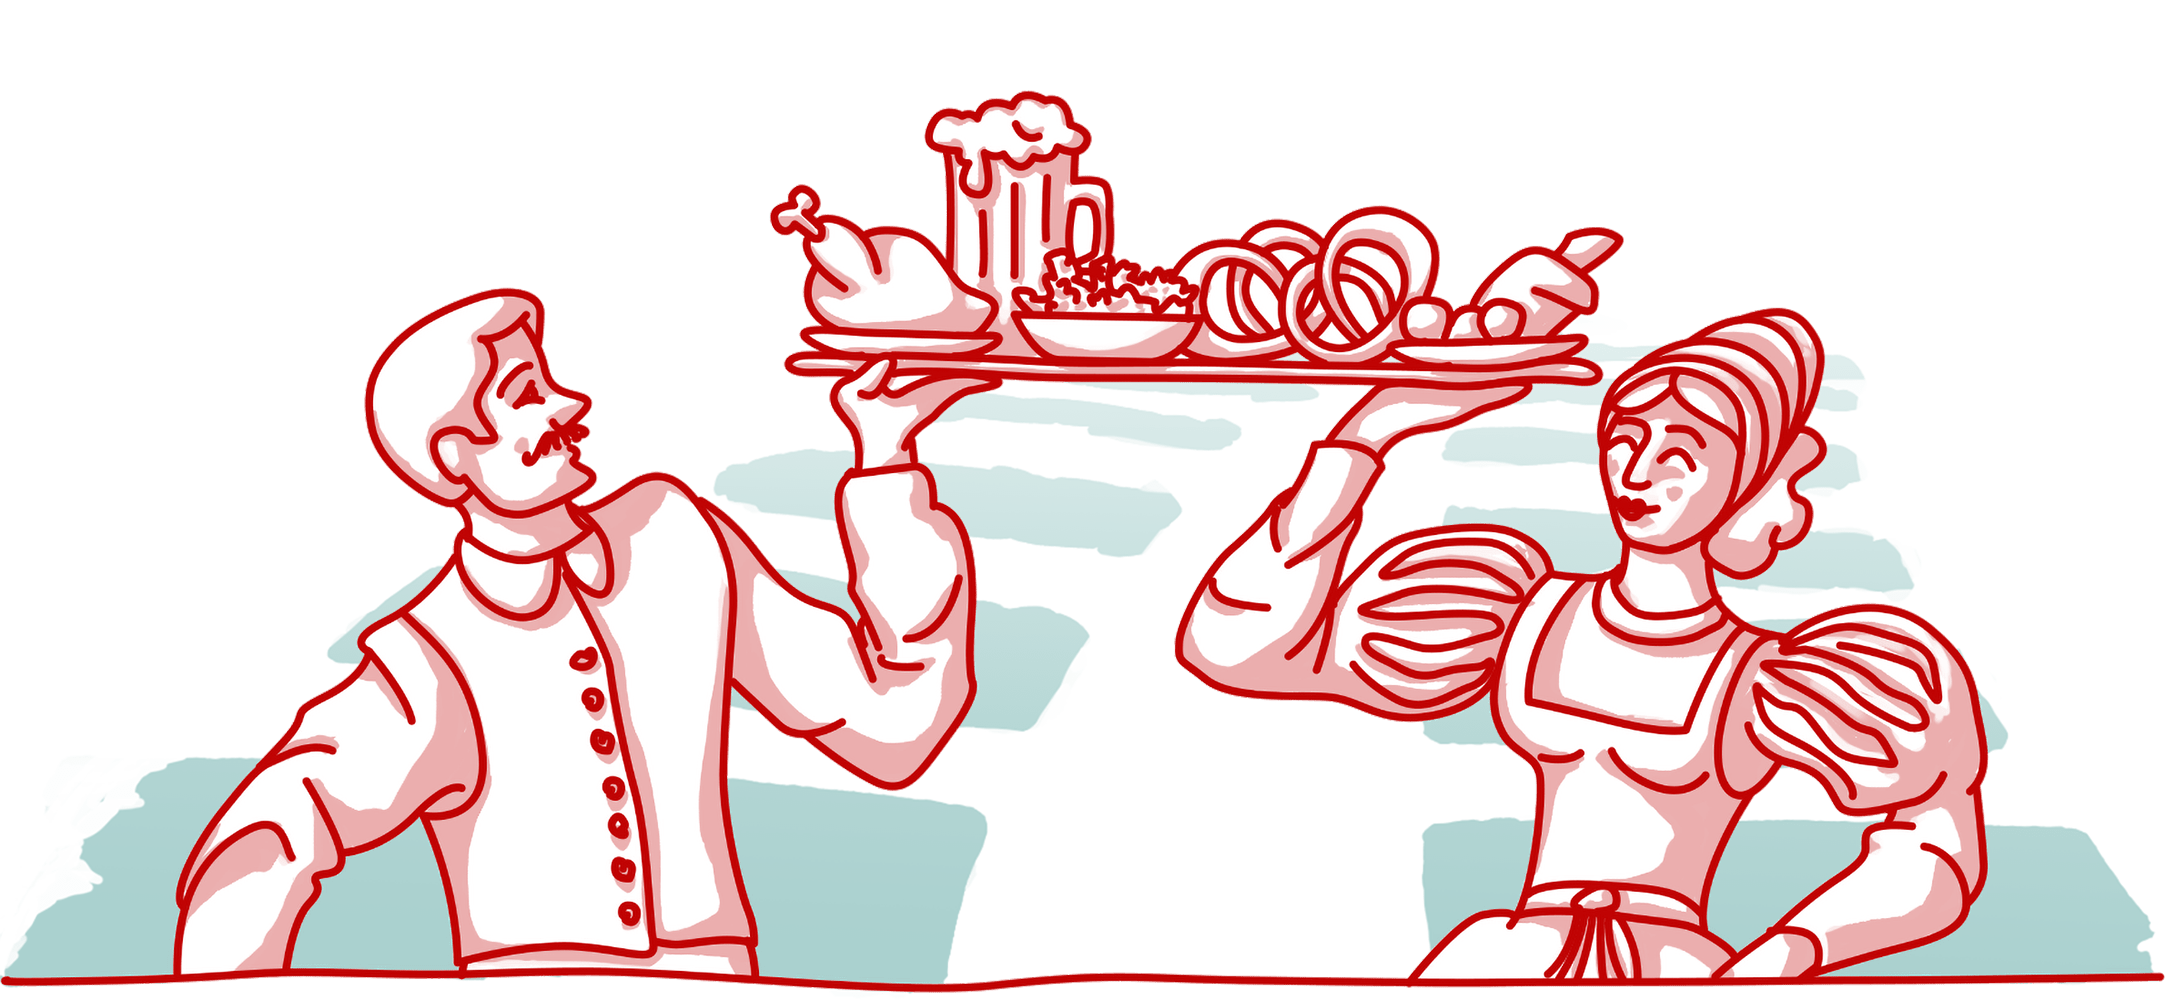 Illustrierte Bedienungen in Tracht mit Speisentablett für die Webseite der Gastronomie Ochsenbraterei München. Passend zum Corporate Design in den Farben Candy Apple, Light Coral, Warm Sky und weiß.